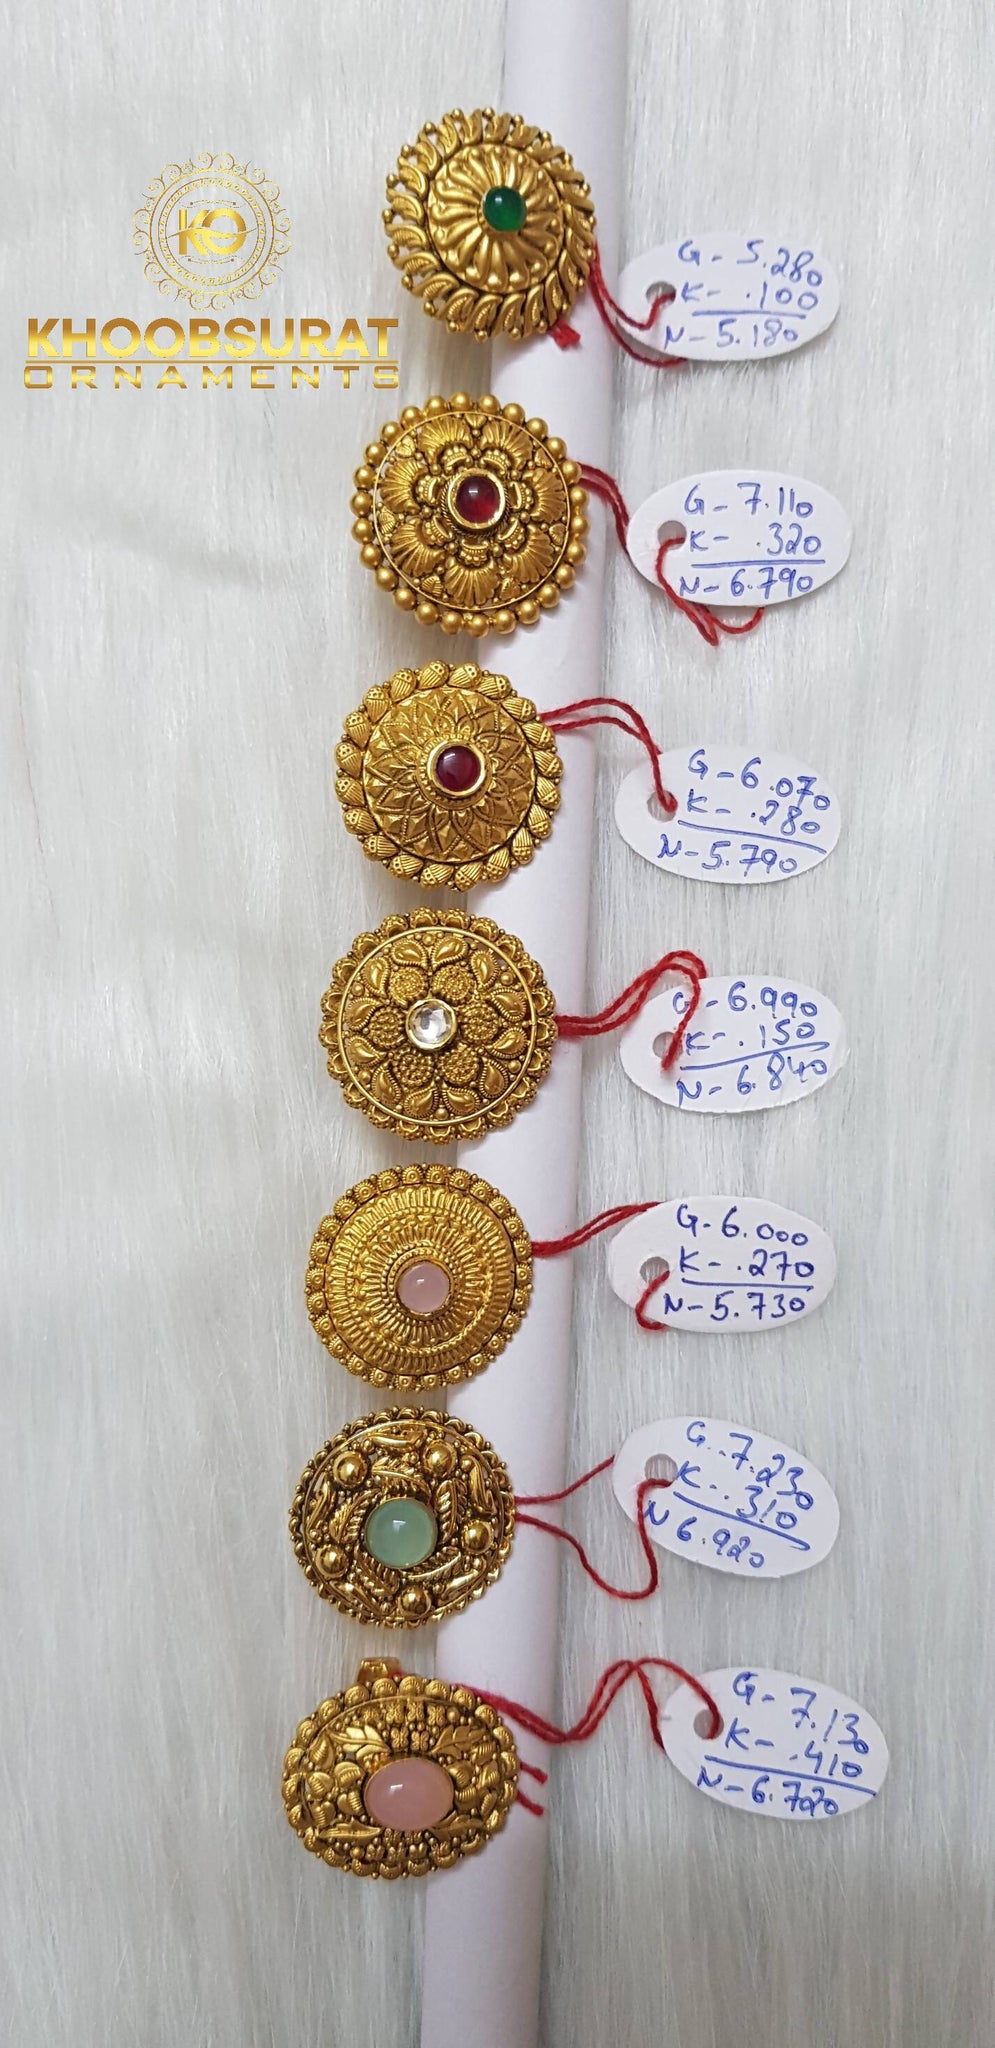 Antique Rings Sarafa Bazar India